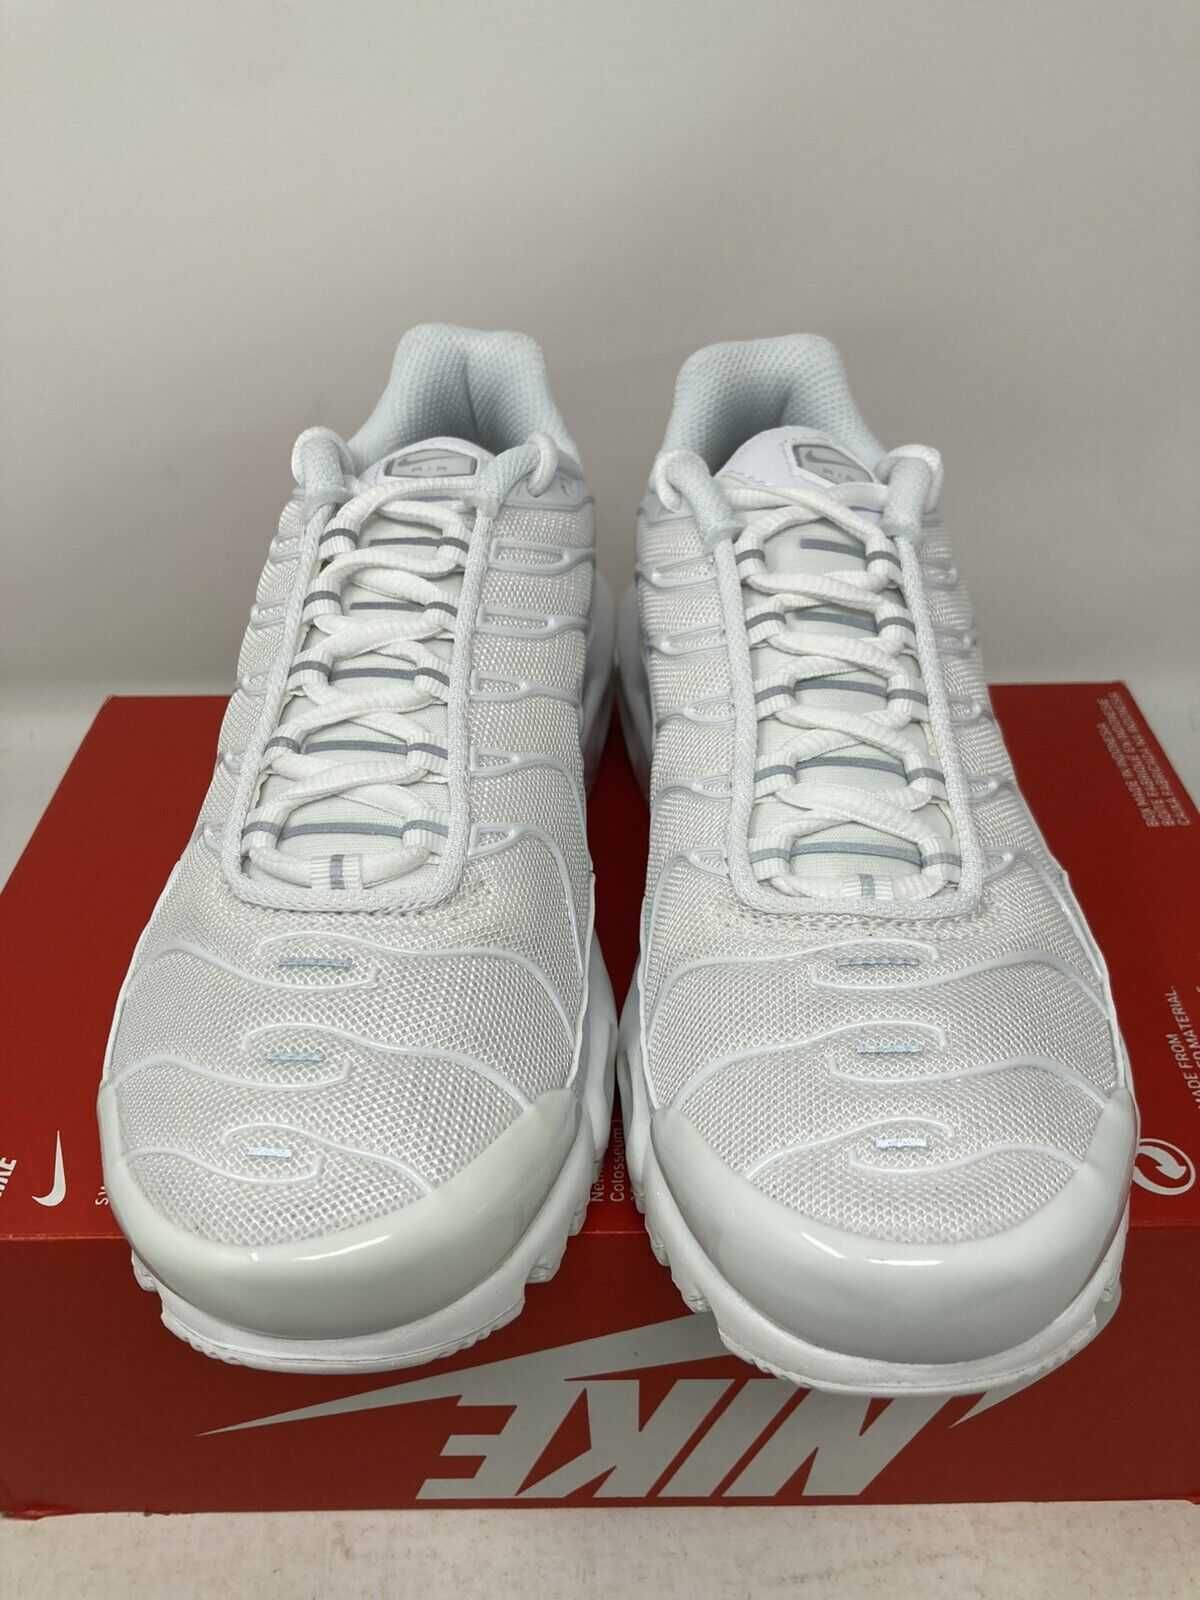 Adidasi Nike Tn Air max plus white Pure platinum 100% originali-44.5